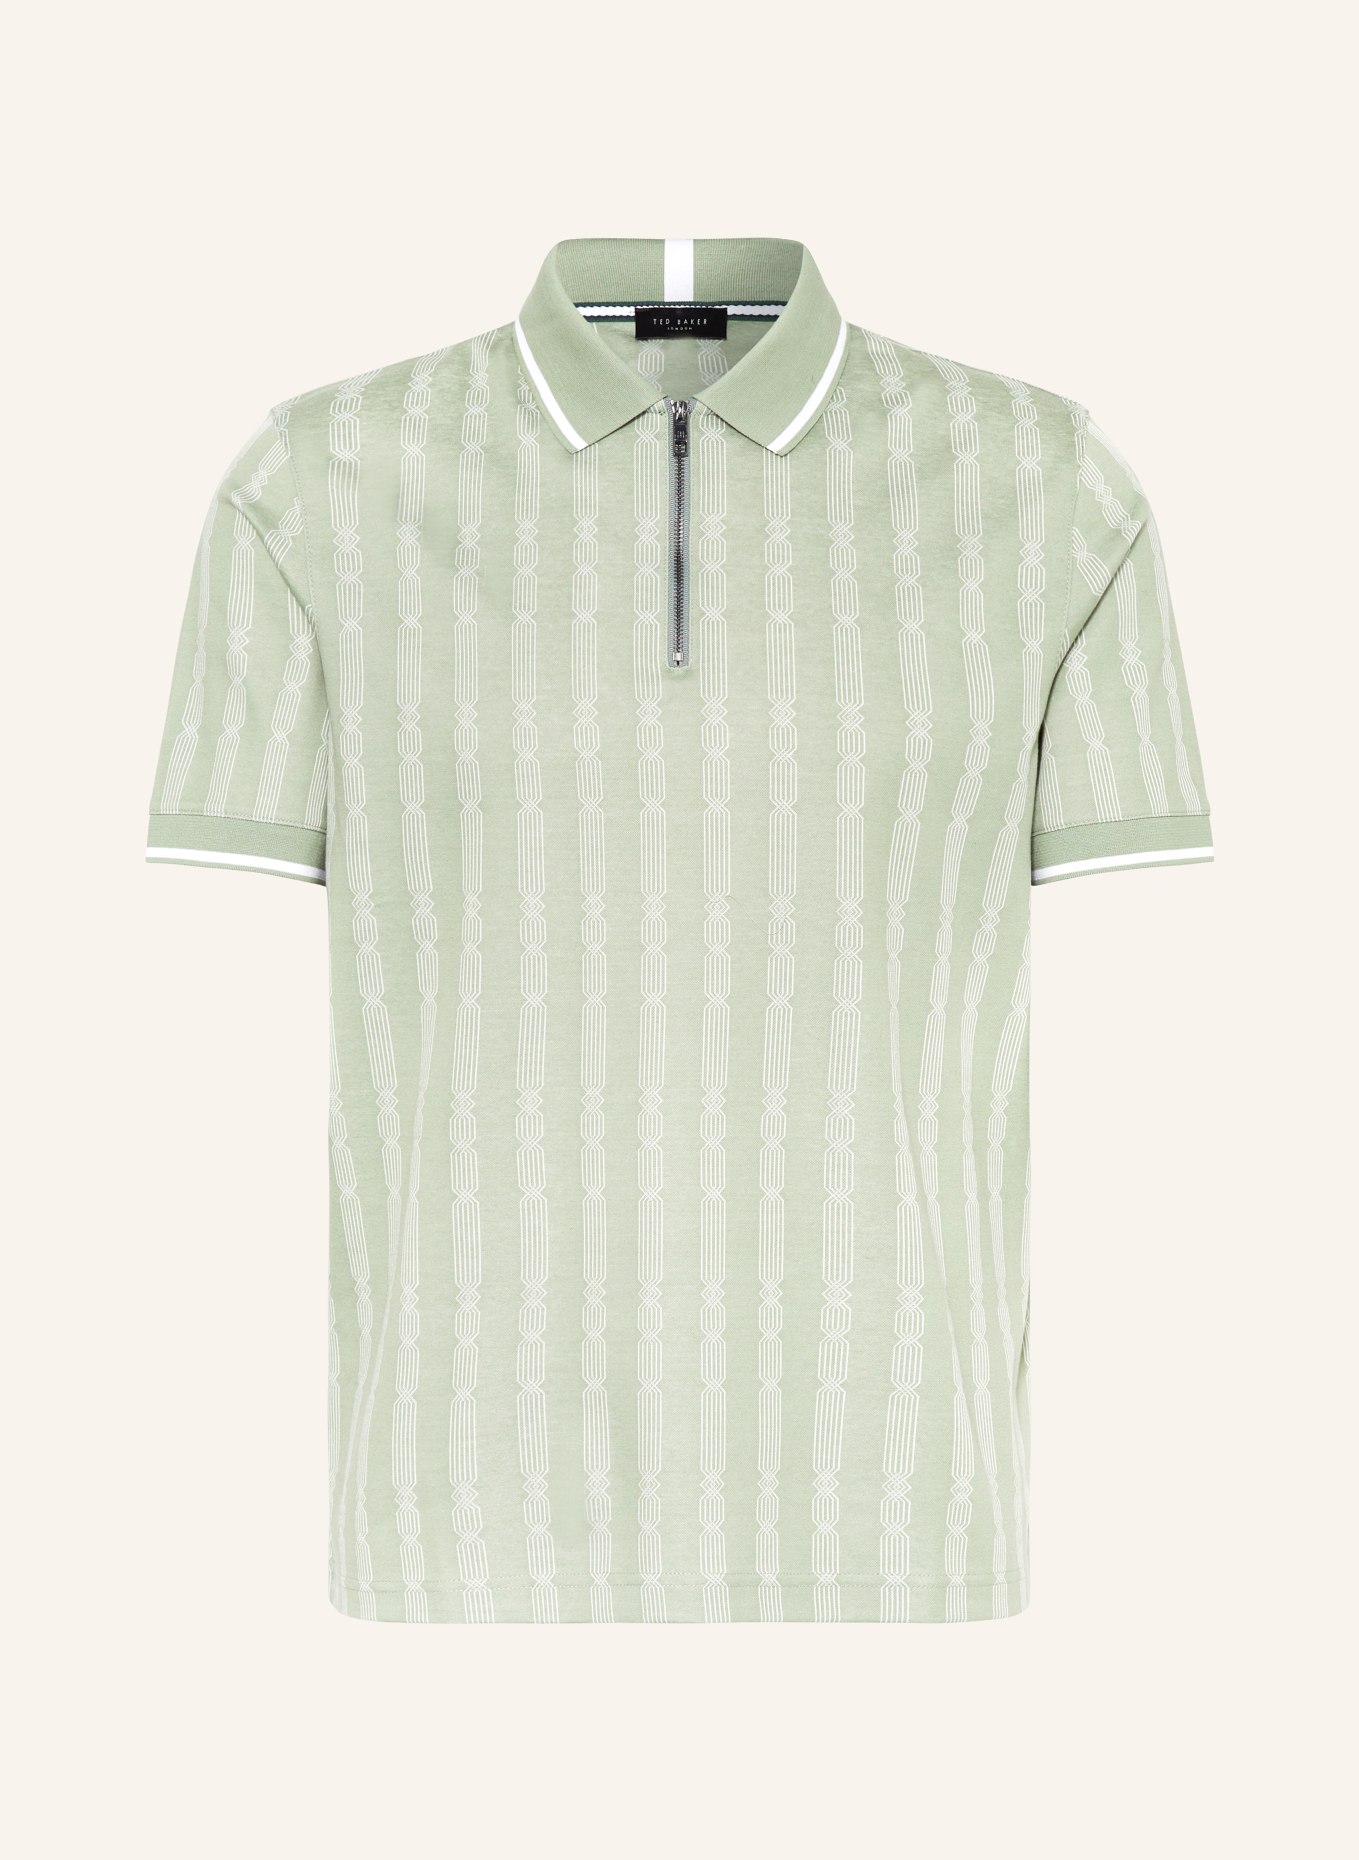 TED BAKER Strick-Poloshirt ICKEN Regular Fit, Farbe: HELLGRÜN/ WEISS (Bild 1)